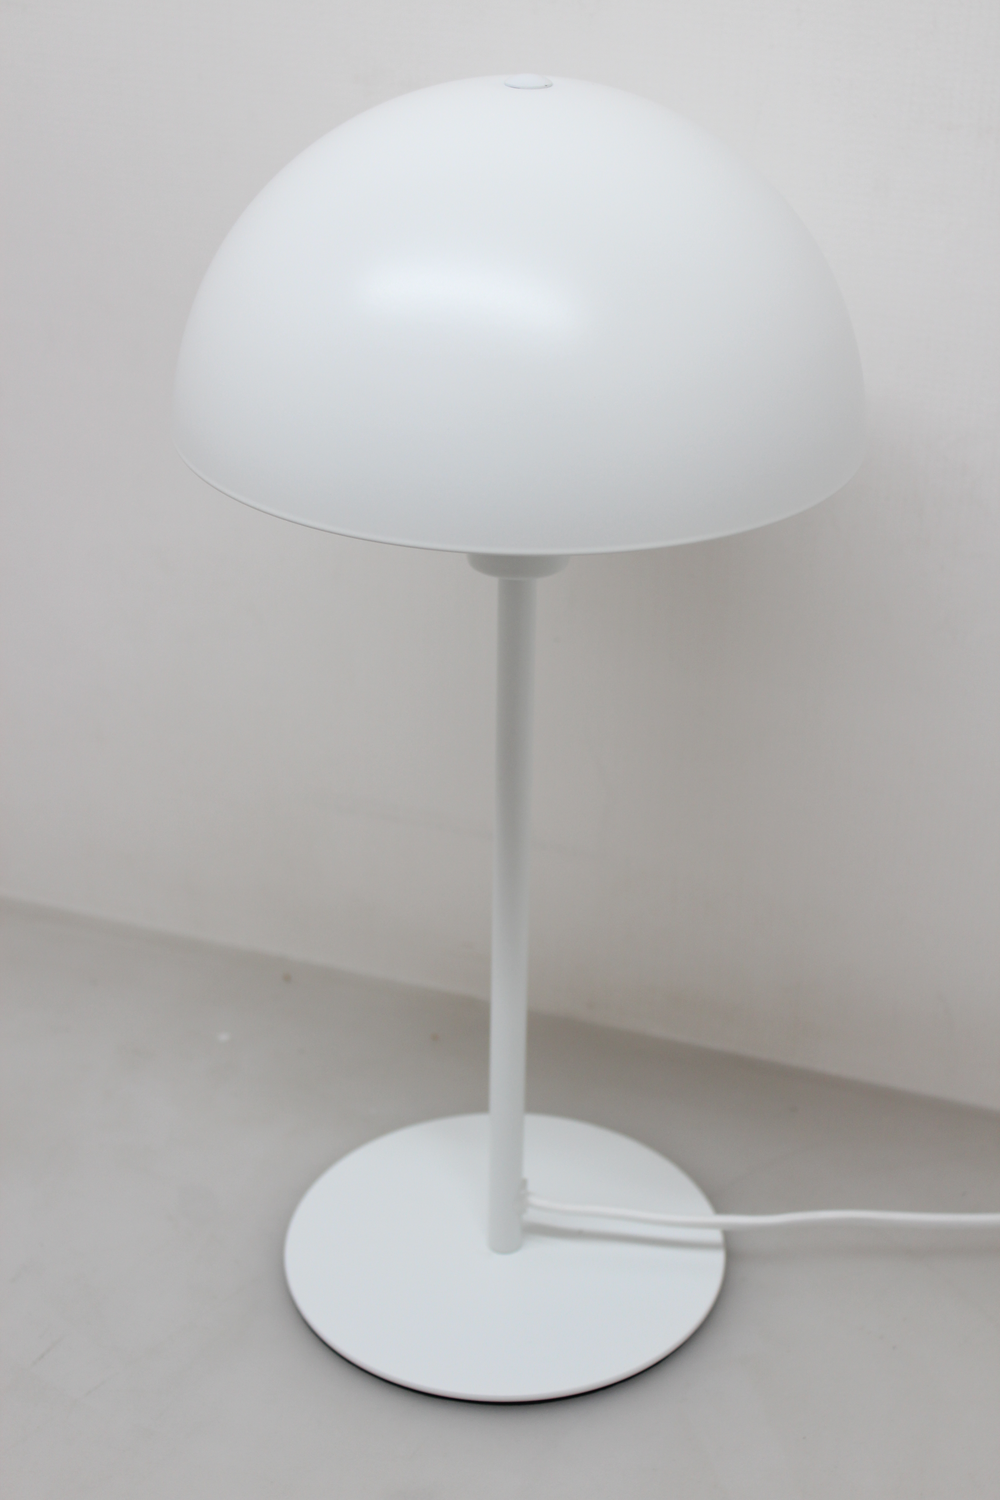 Nordlux Ellen Tischlampe Tischleuchte Tischlicht Leuchte Lampe Licht E14 Weiß